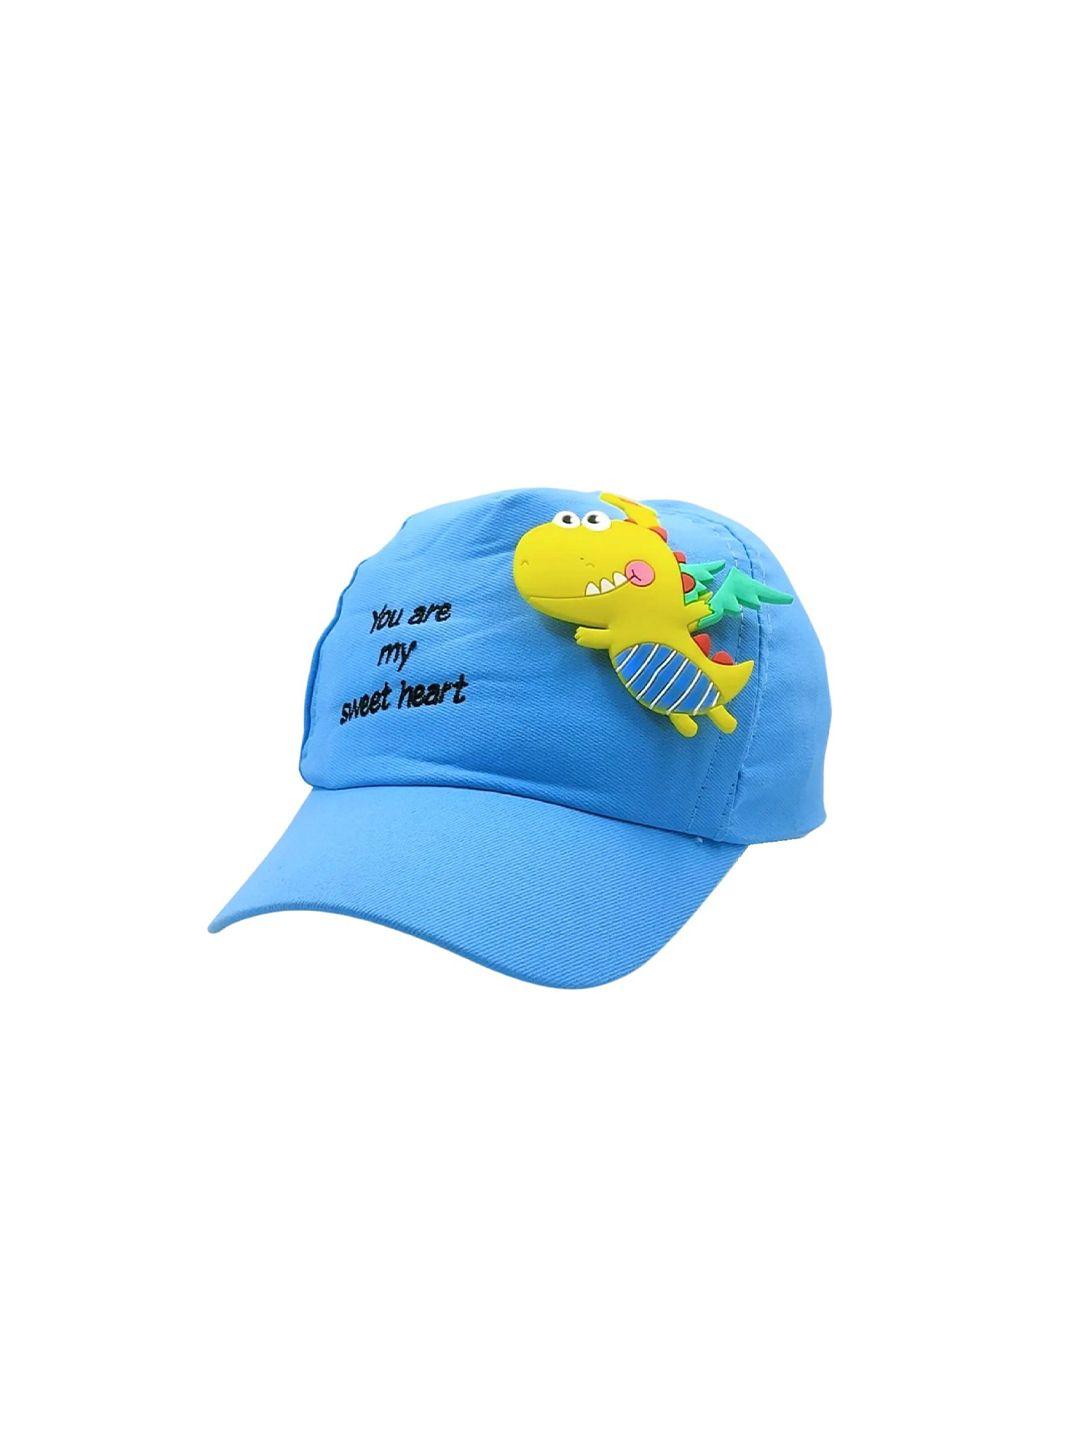 zacharias unisex kids blue & yellow baseball cap